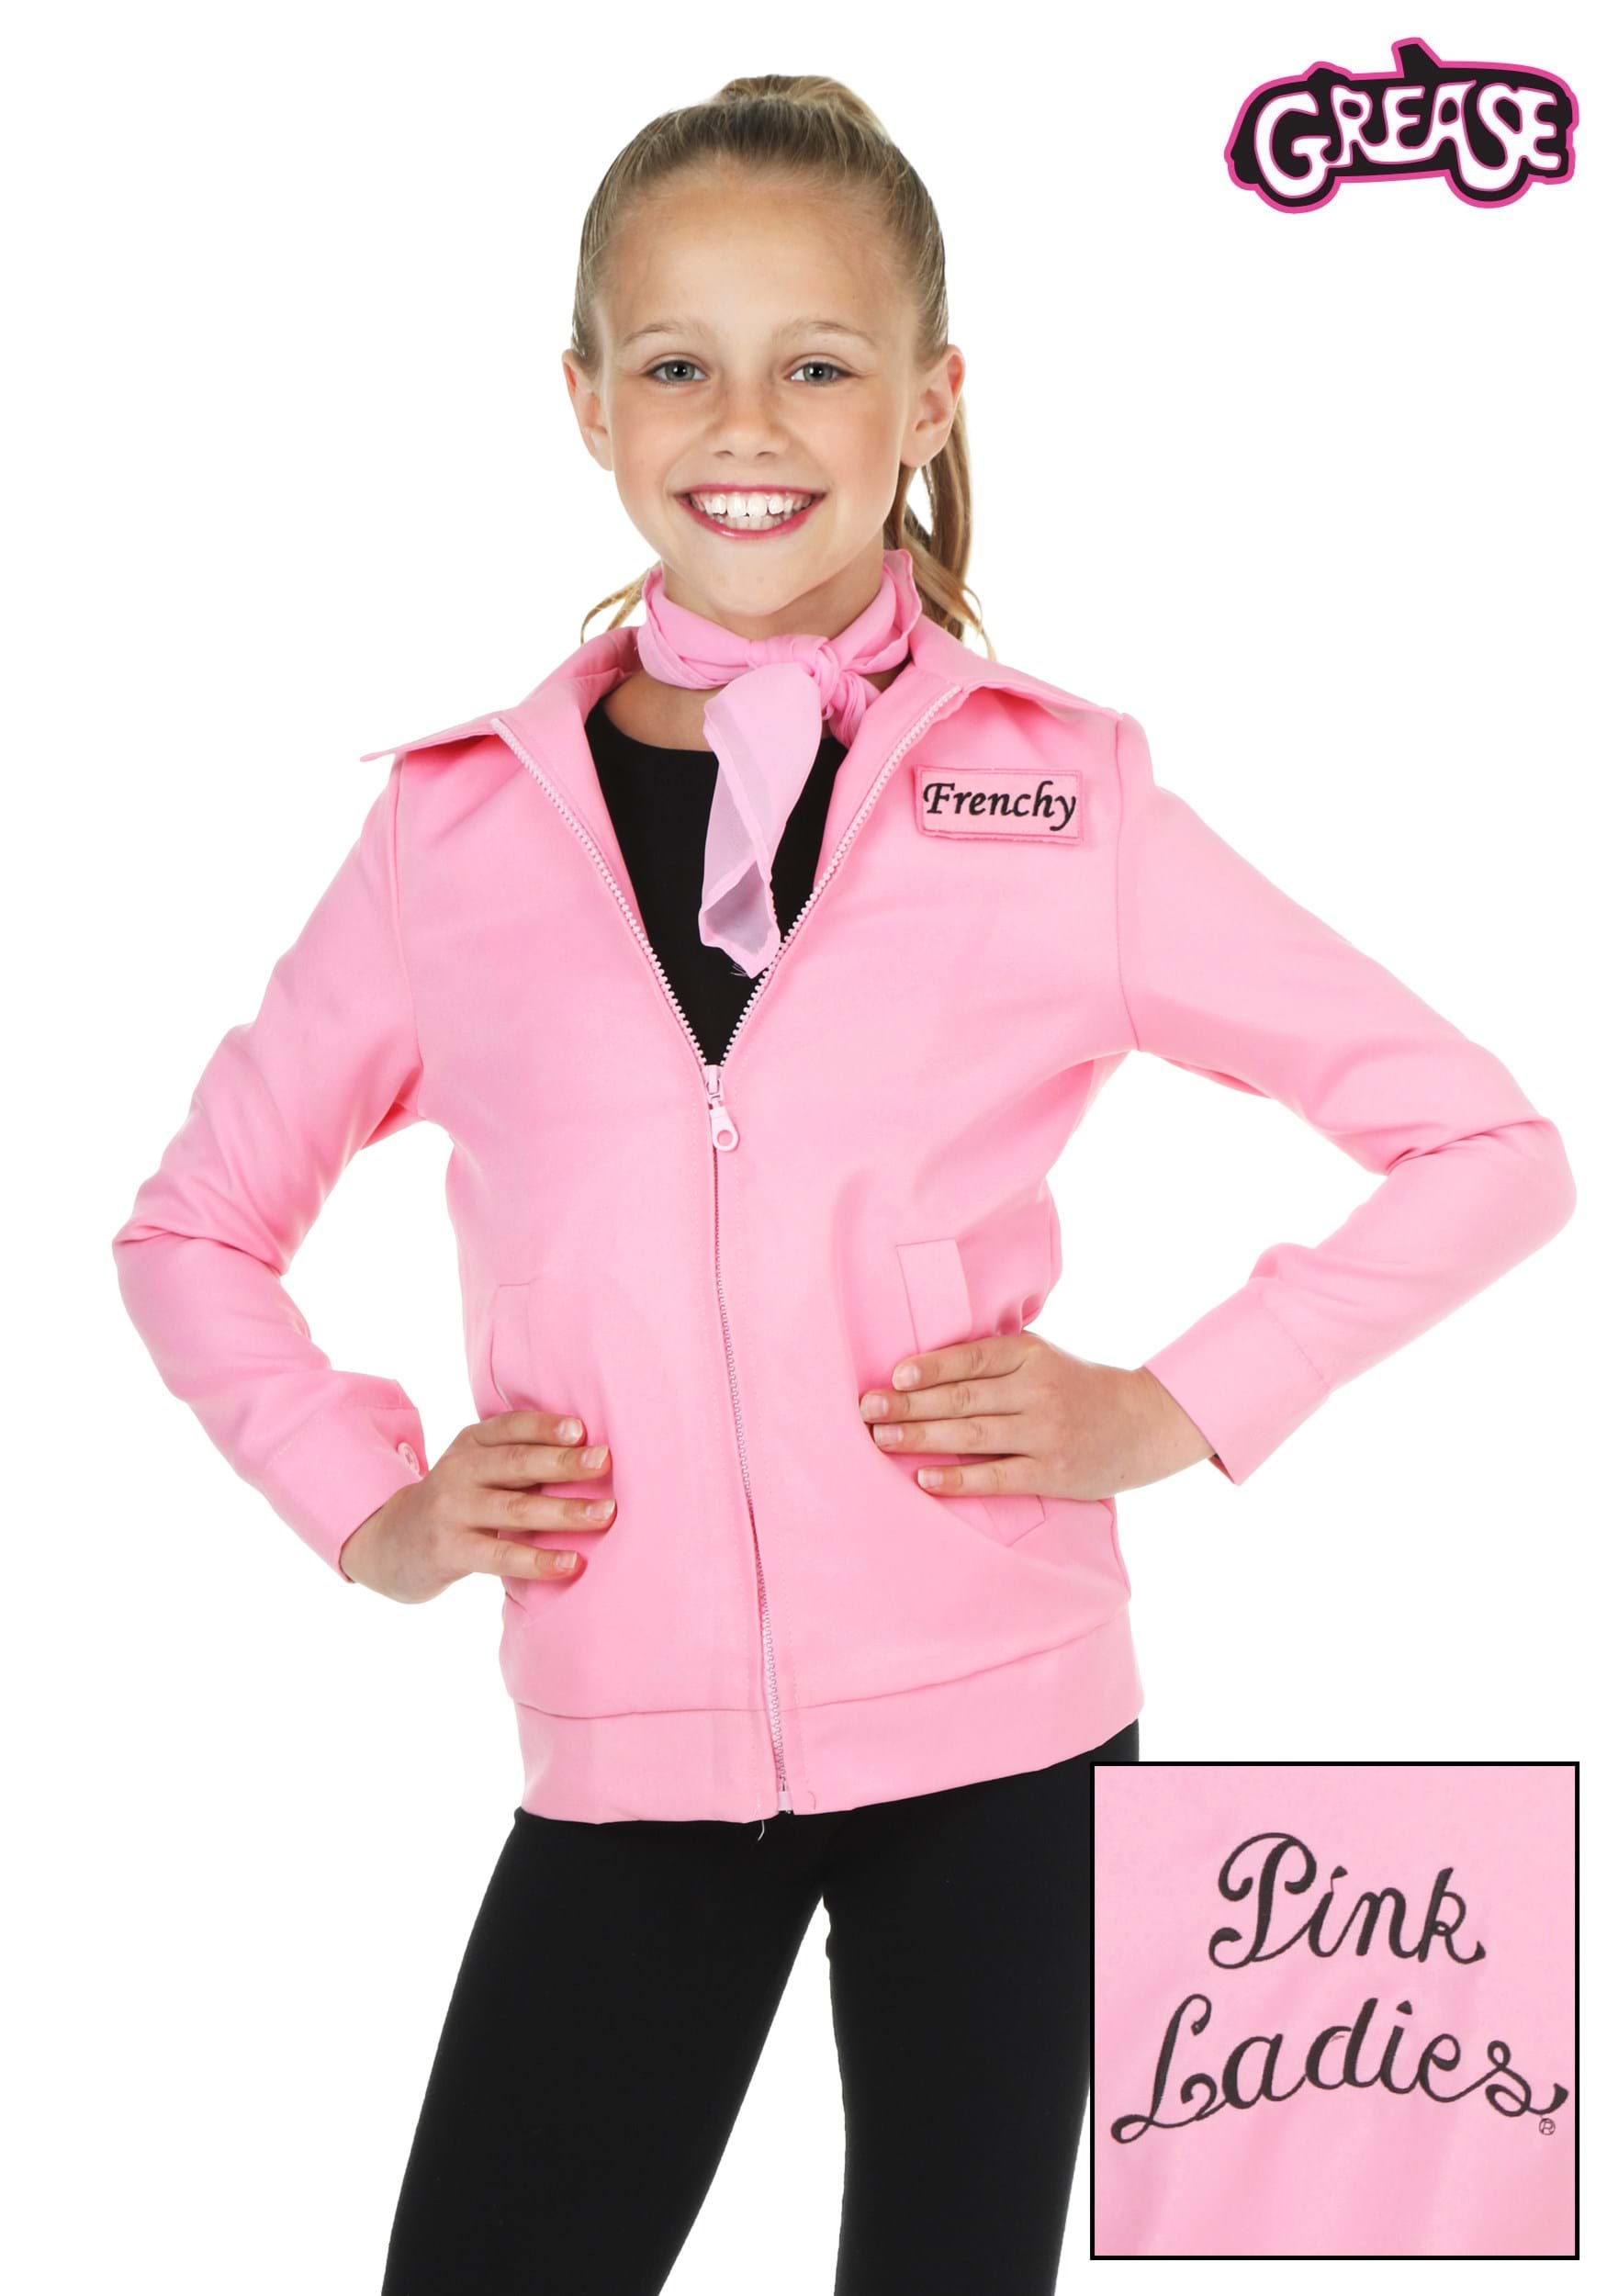 Disfraz de Grease Chaqueta Pink Ladies para niña